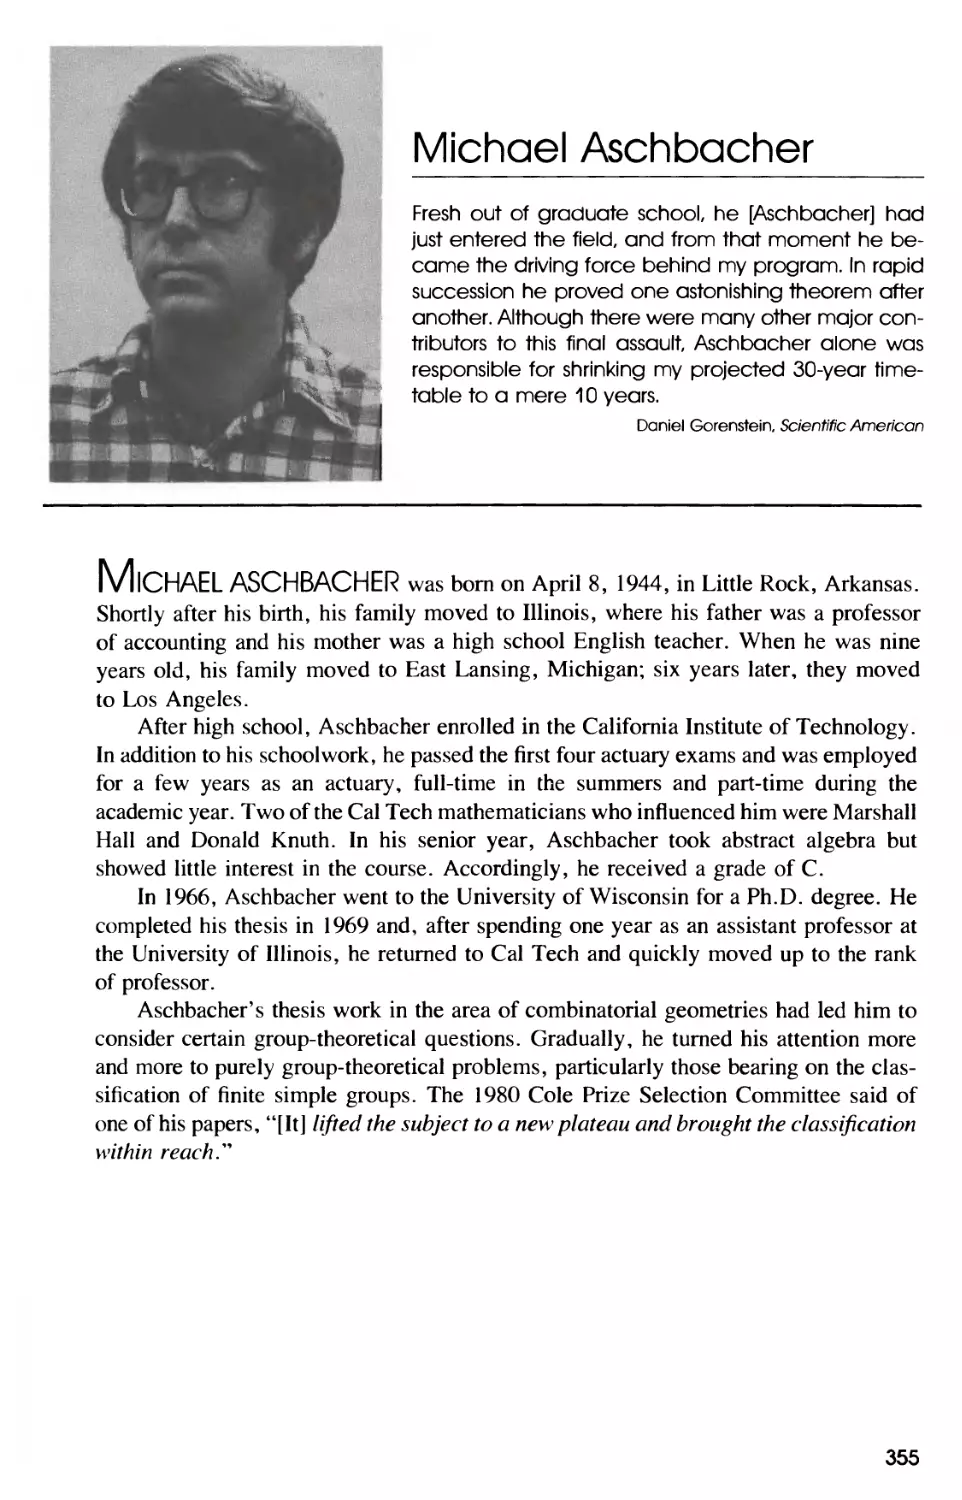 Biography of Michael Aschbacher